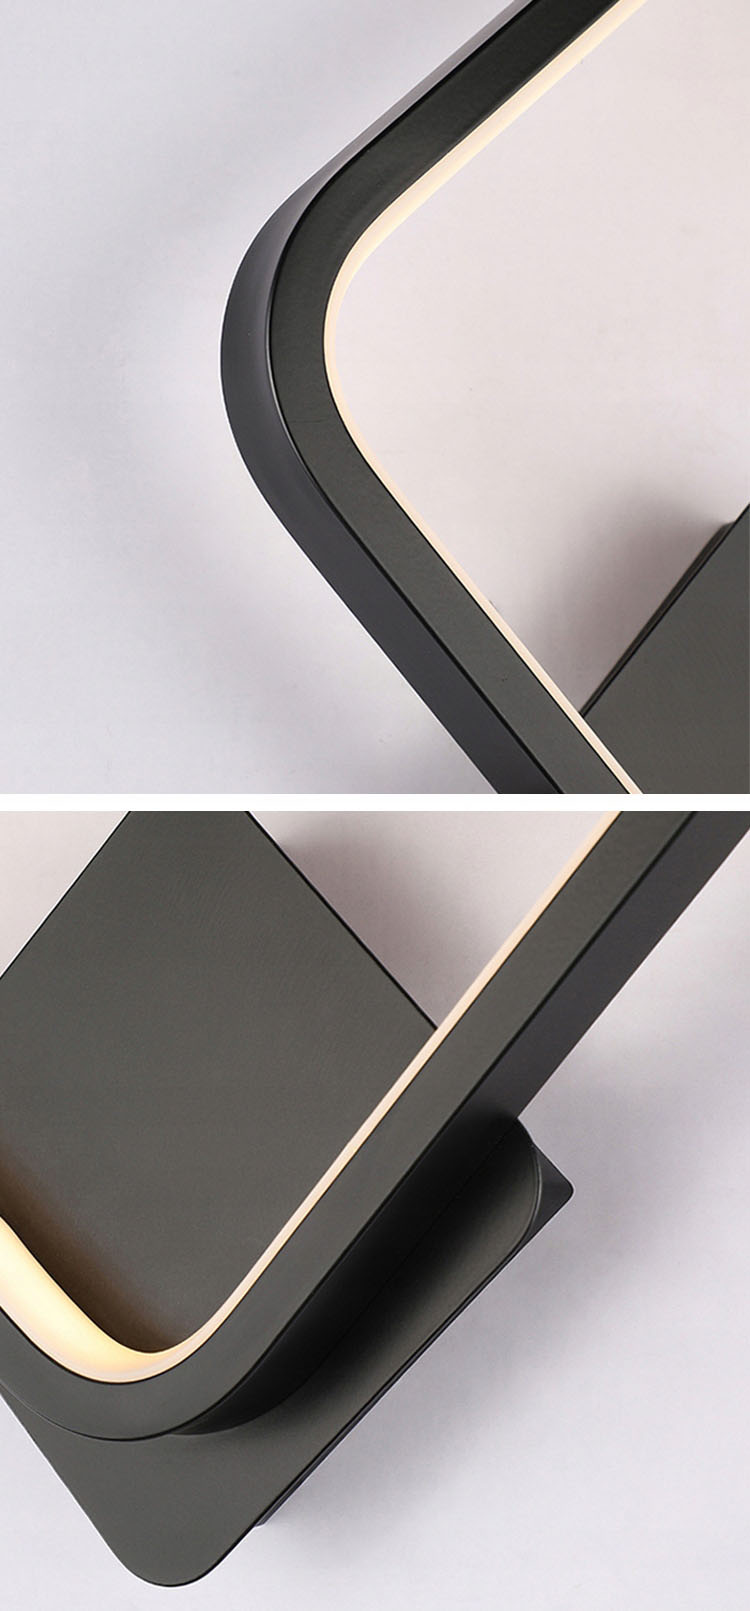 Kinkiet FABIO - aluminiowa konstrukcja dla trwałości i elegancji